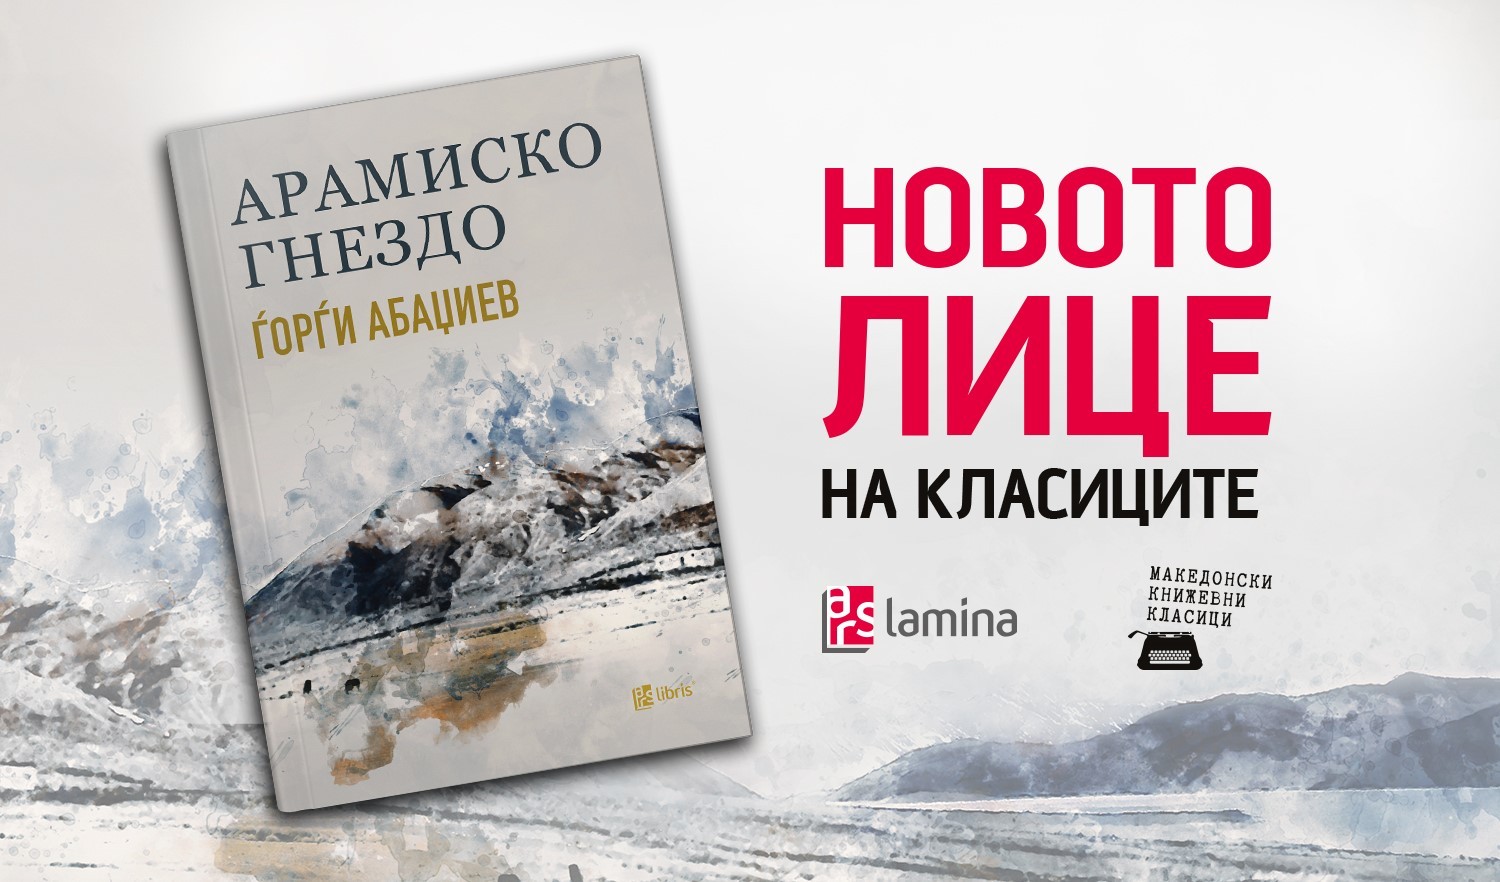 „Арамиско гнездо“ од Ѓорѓи Абаџиев е историска авантура за ајдутството, борбата и љубовта